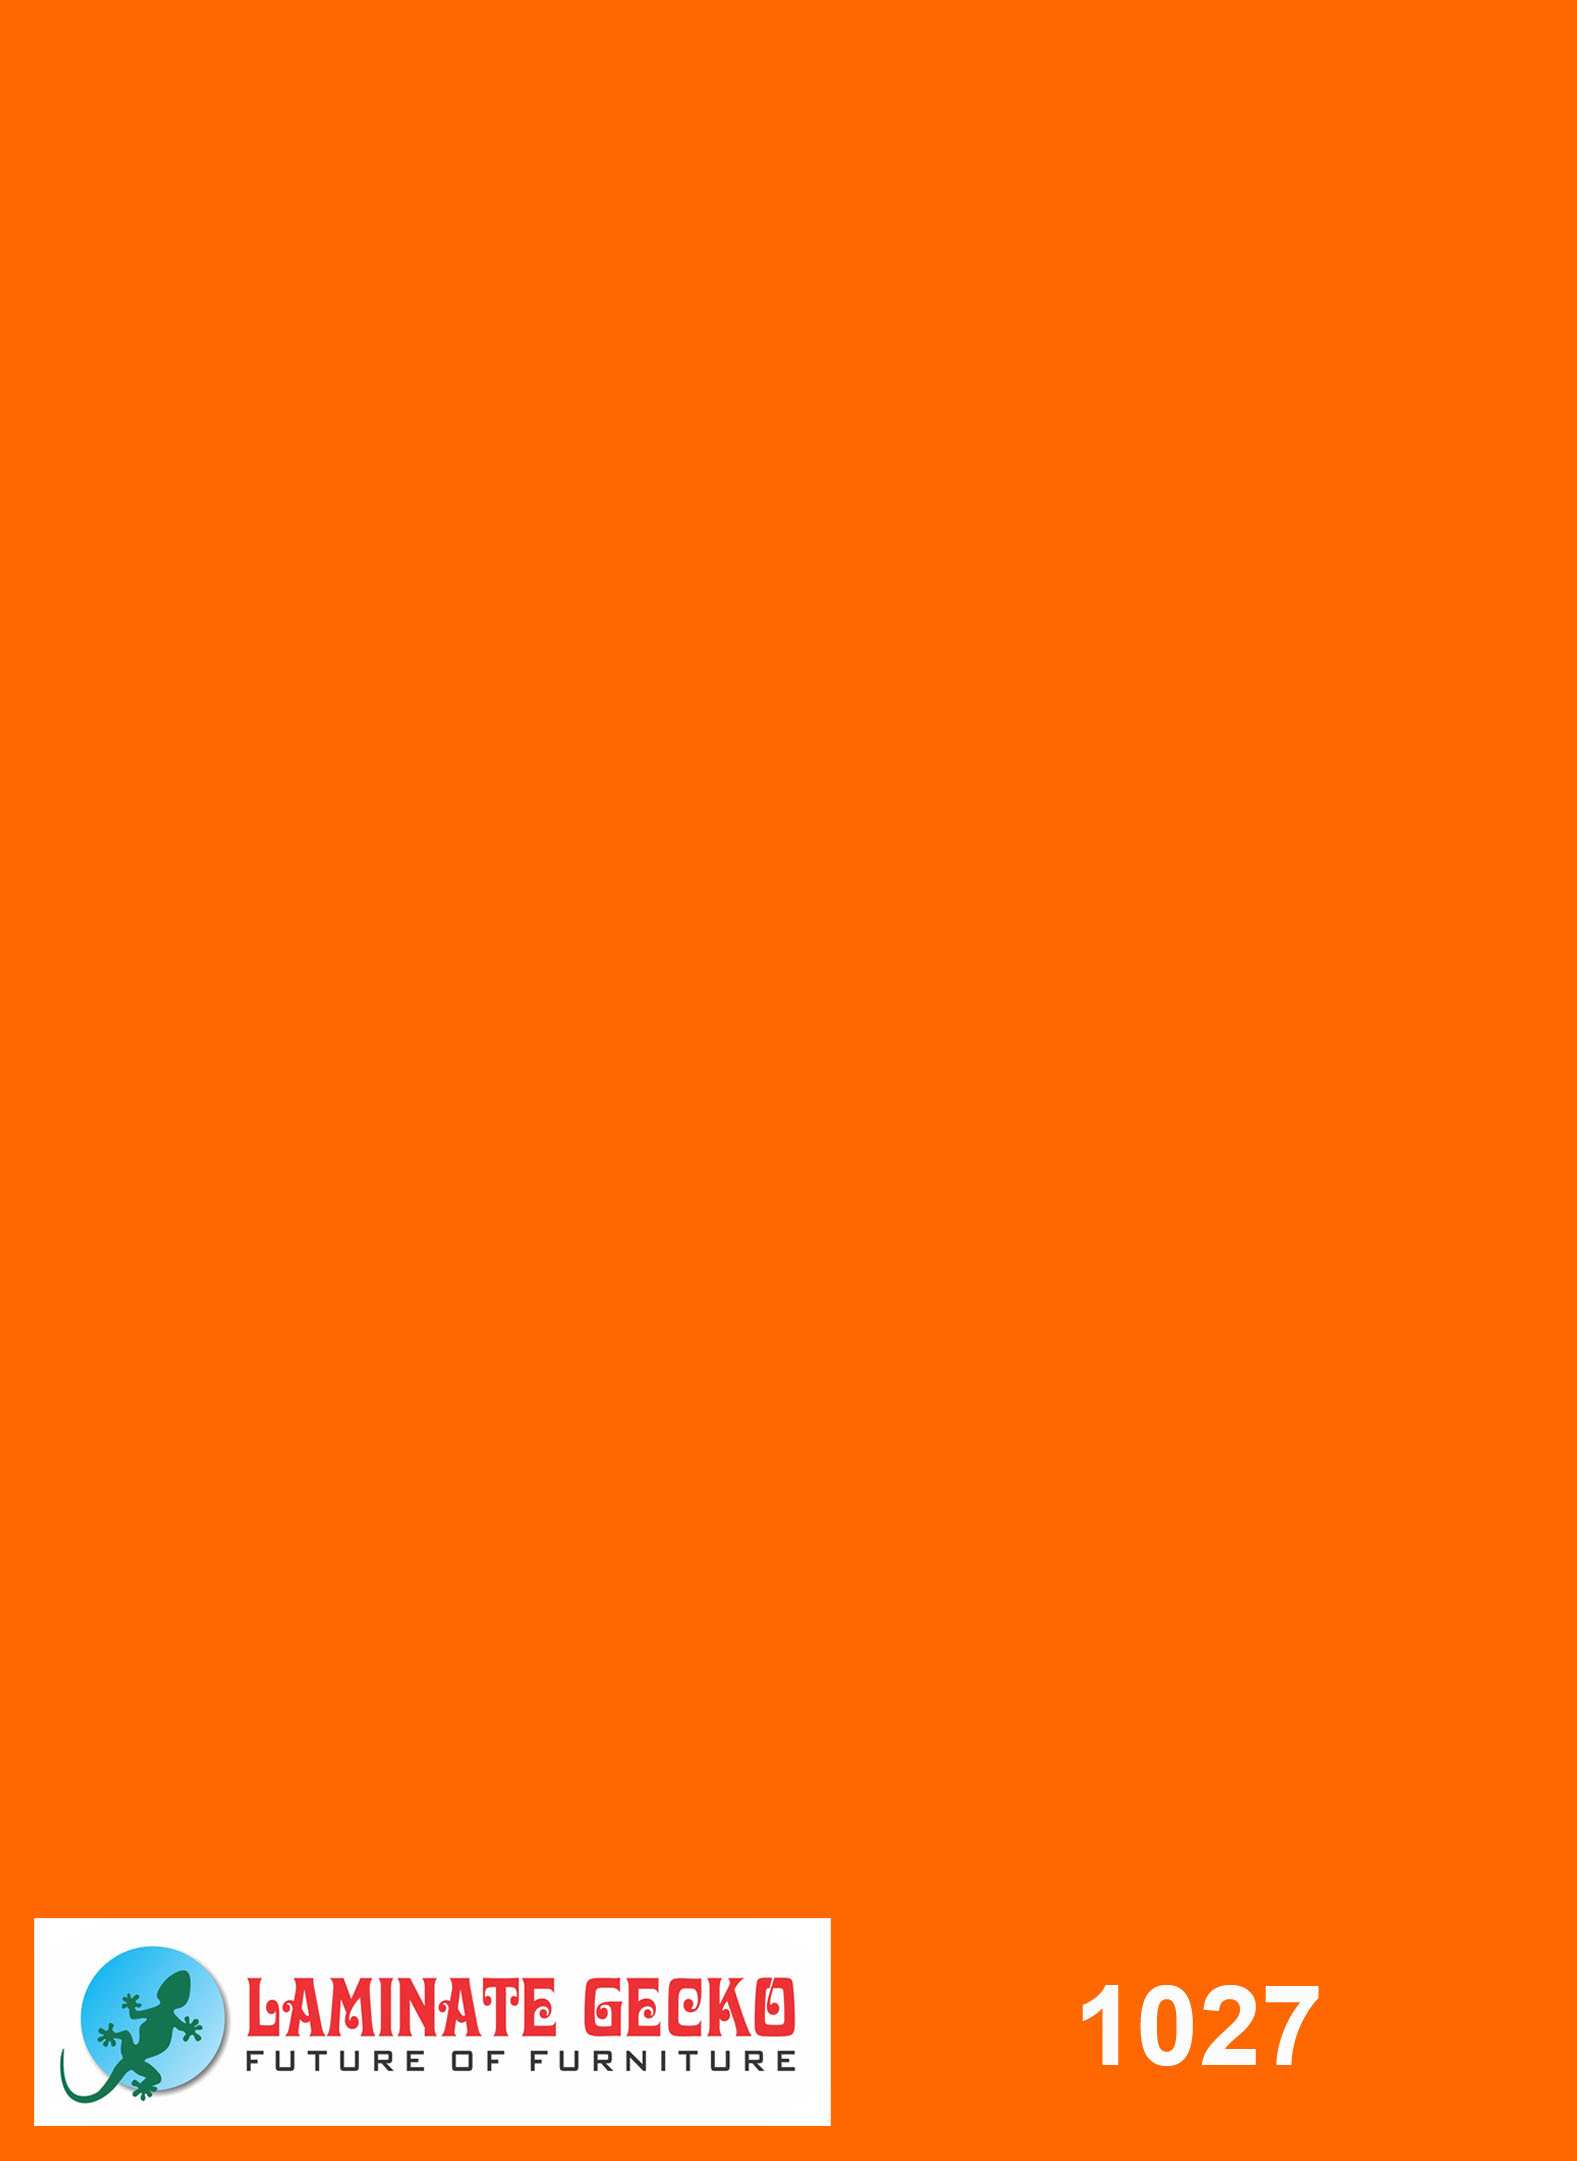 Background Hình nền màu cam đẹp đơn giản trong TK  powerpoint  In Ấn  Nhất Việt  Công ty In Số 1 TP Hồ Chí Minh